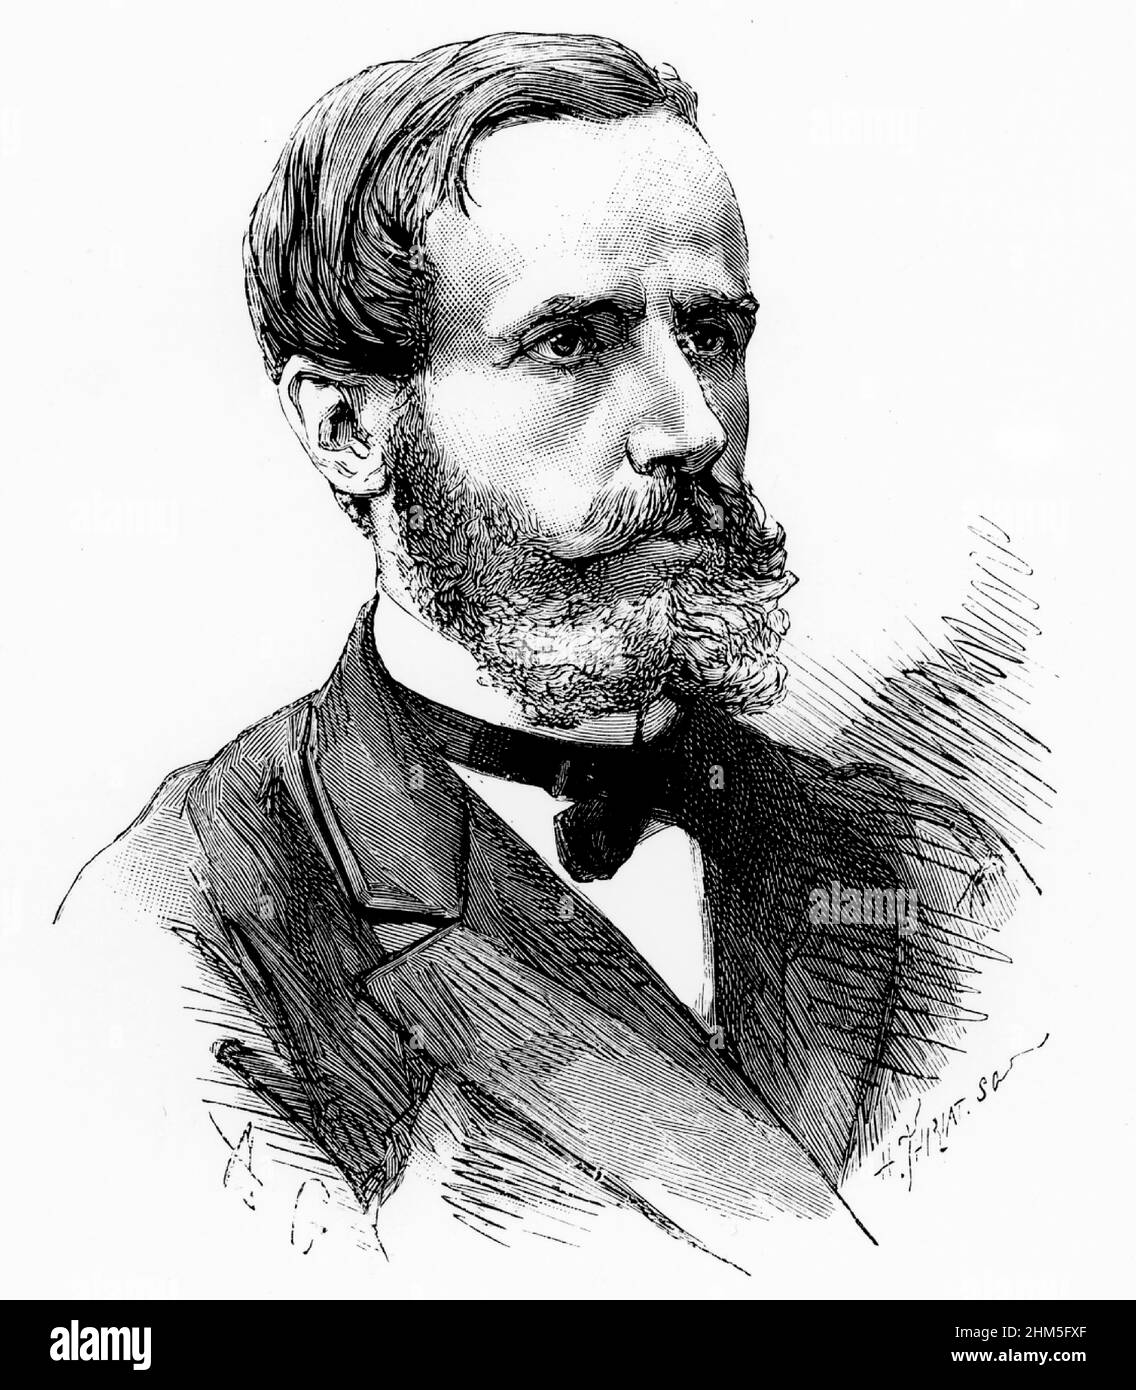 (Raymond) Gaston plante (1834-1889) physicien français Banque D'Images